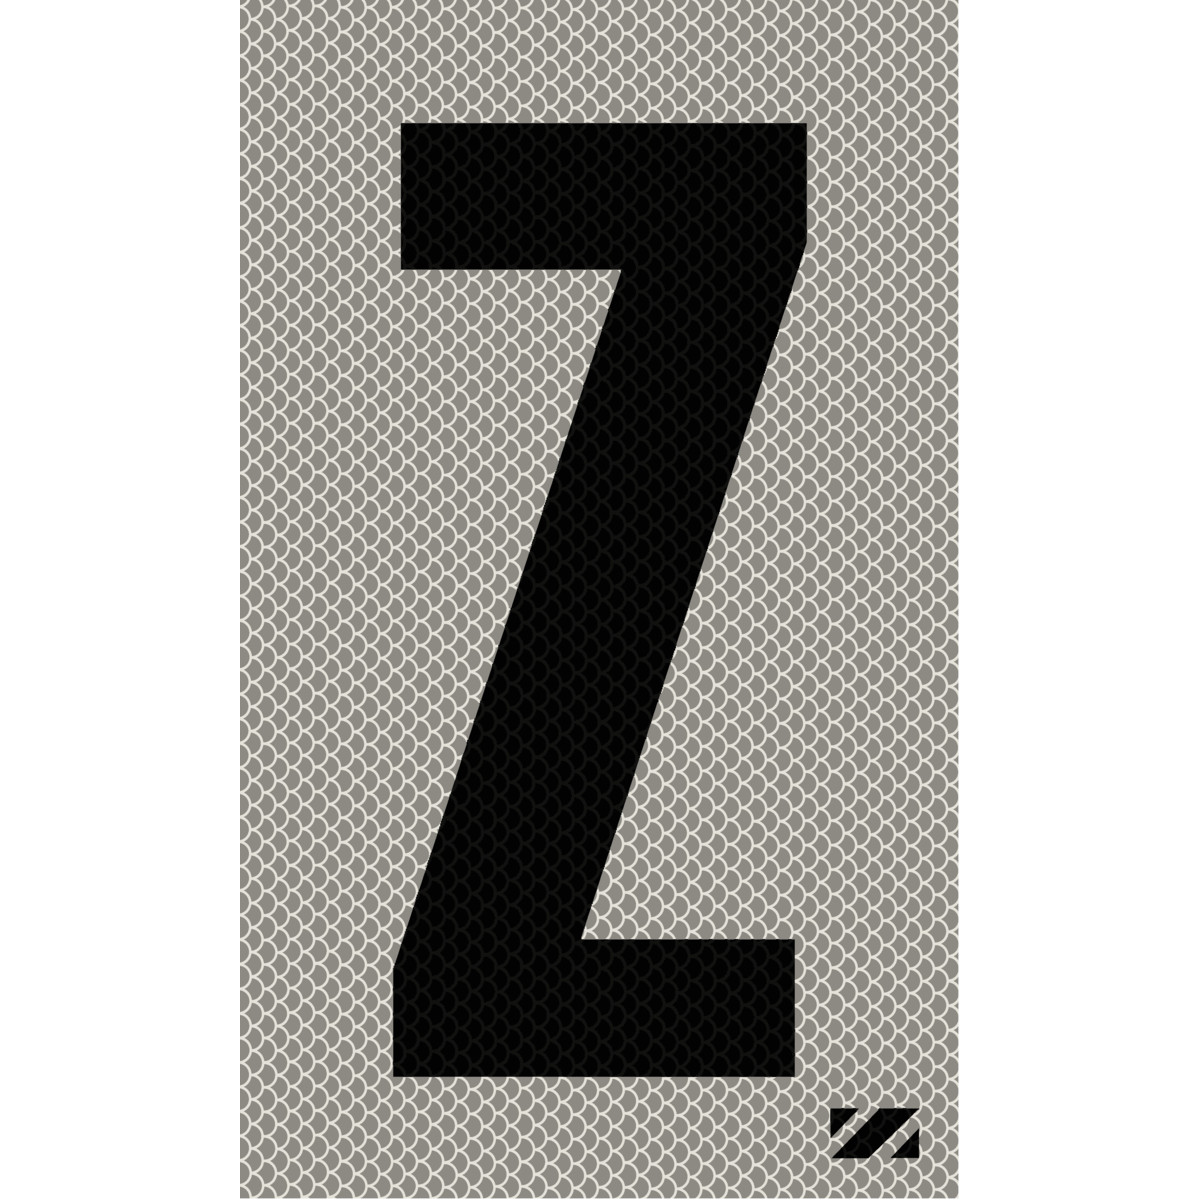 2" Black on Silver High Intensity Reflective "Z"